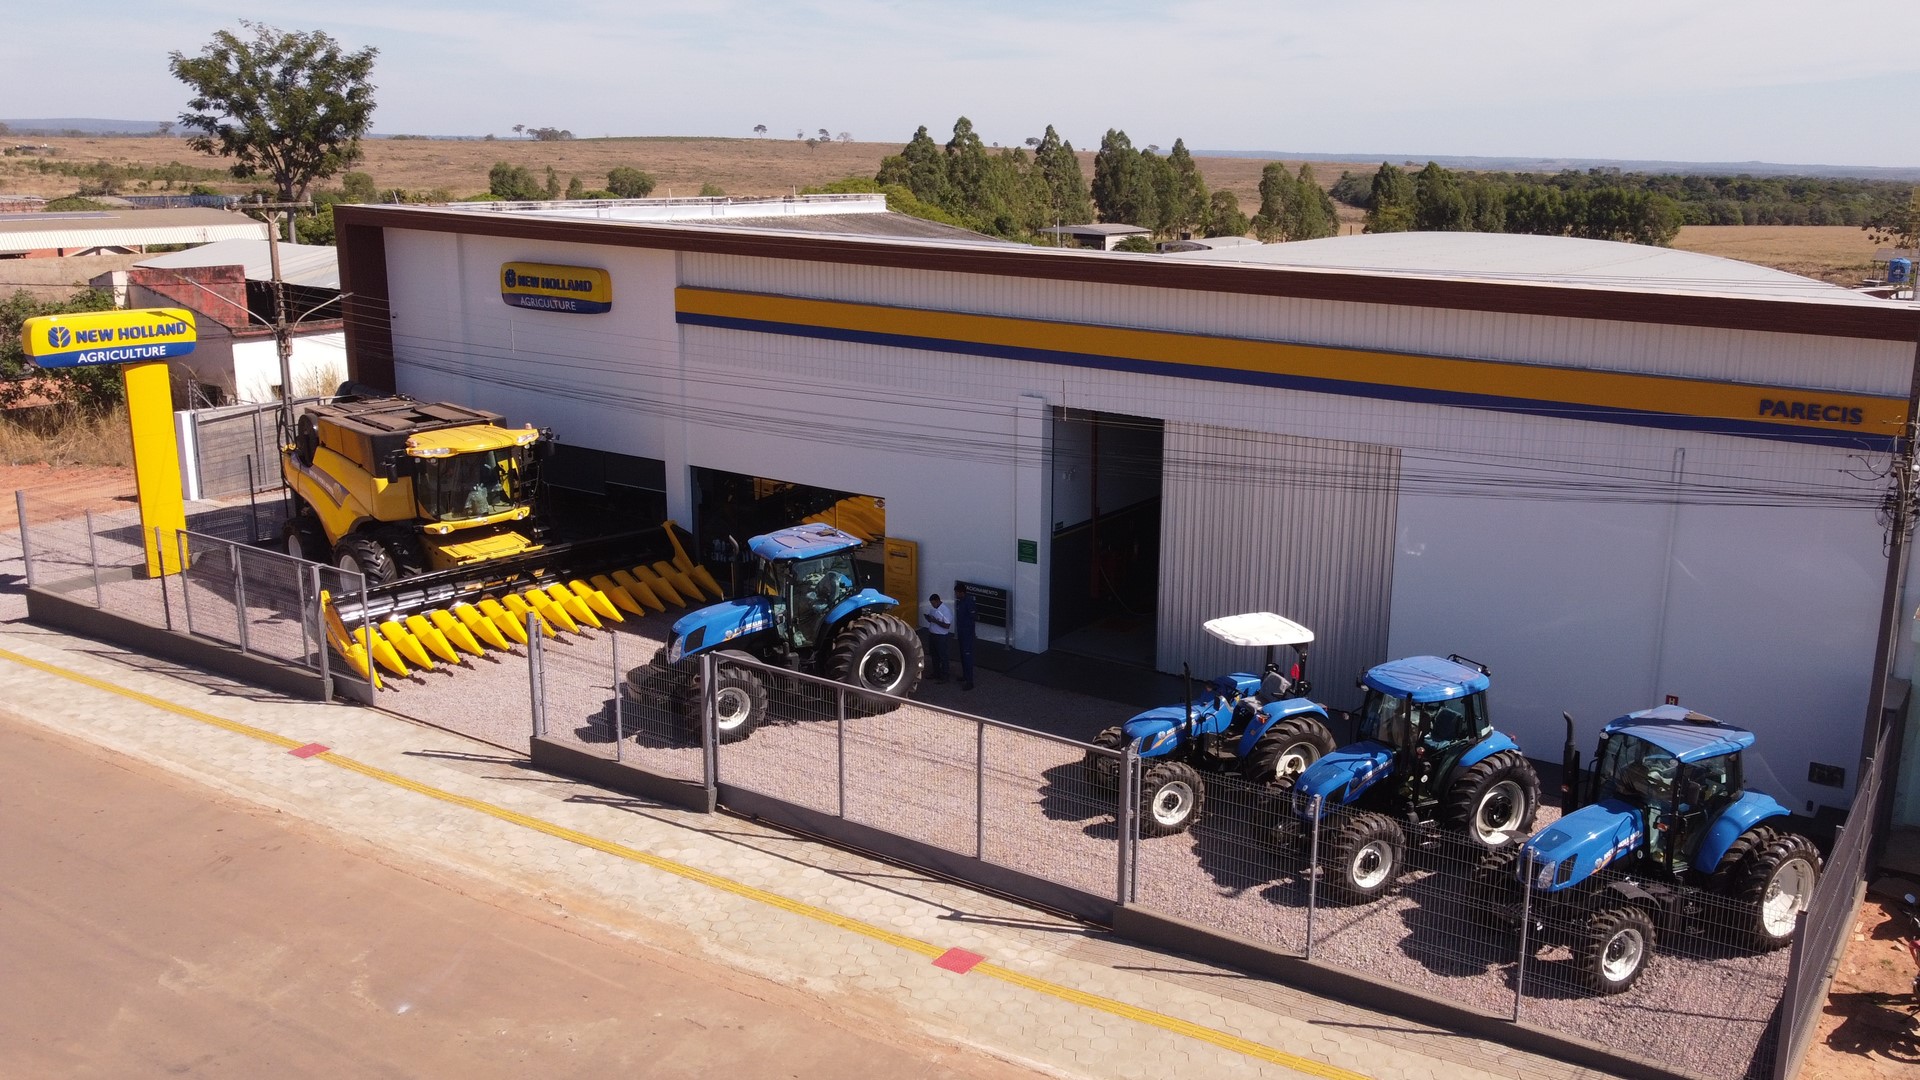 New Holland expande rede de máquinas agrícolas no Mato Grosso